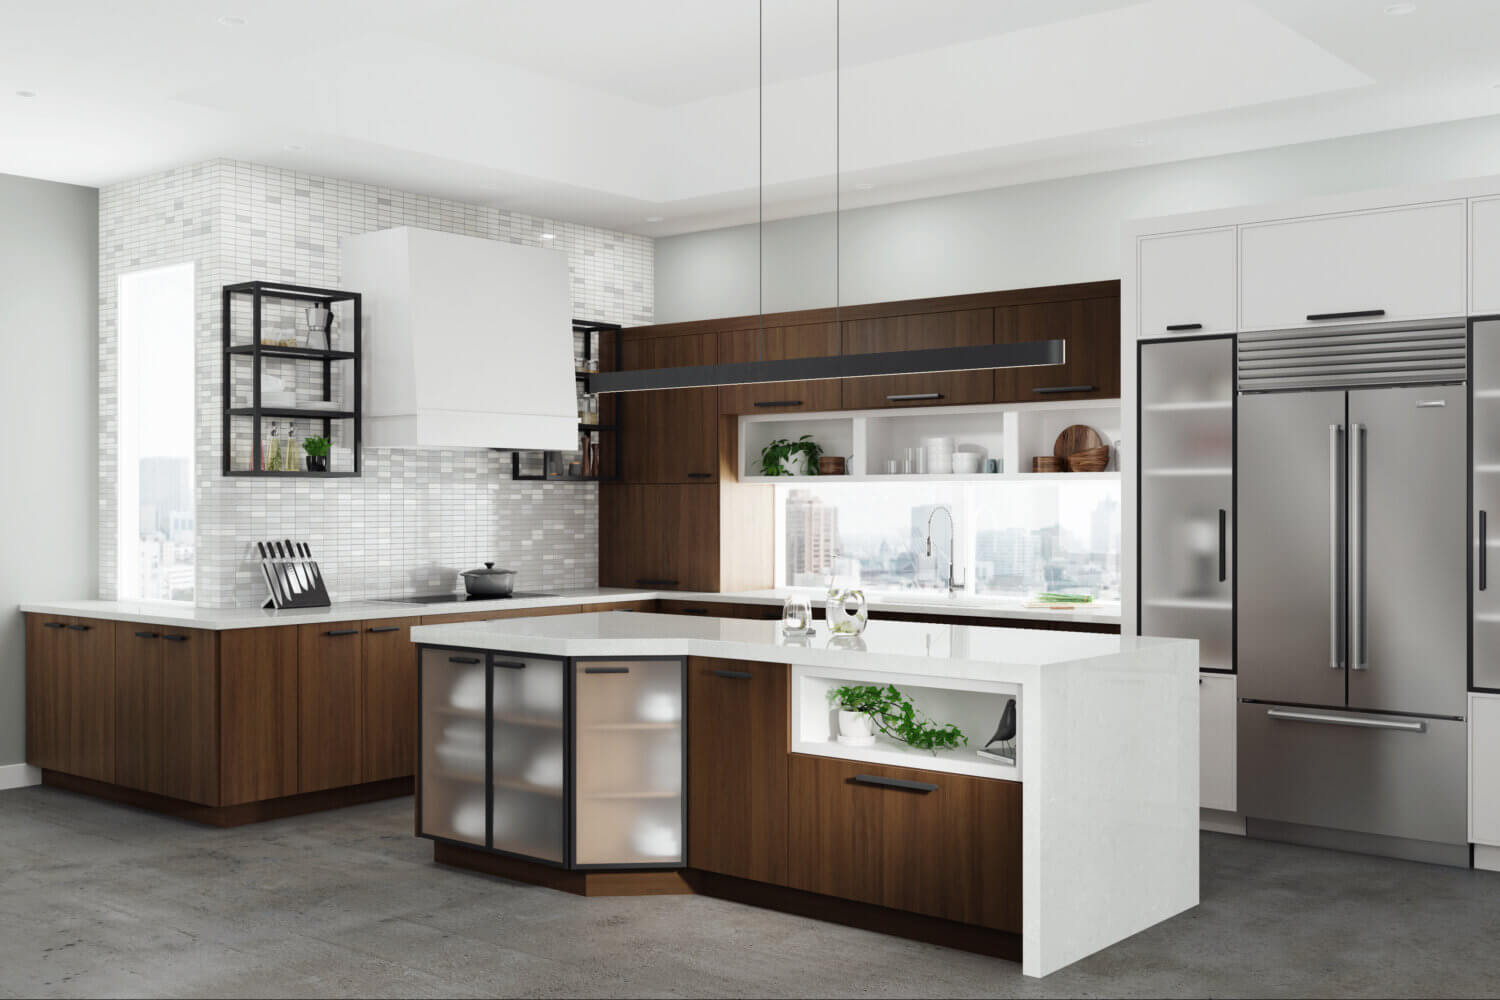 luxury loft kitchen with walnut veneer cabinets - dura supreme